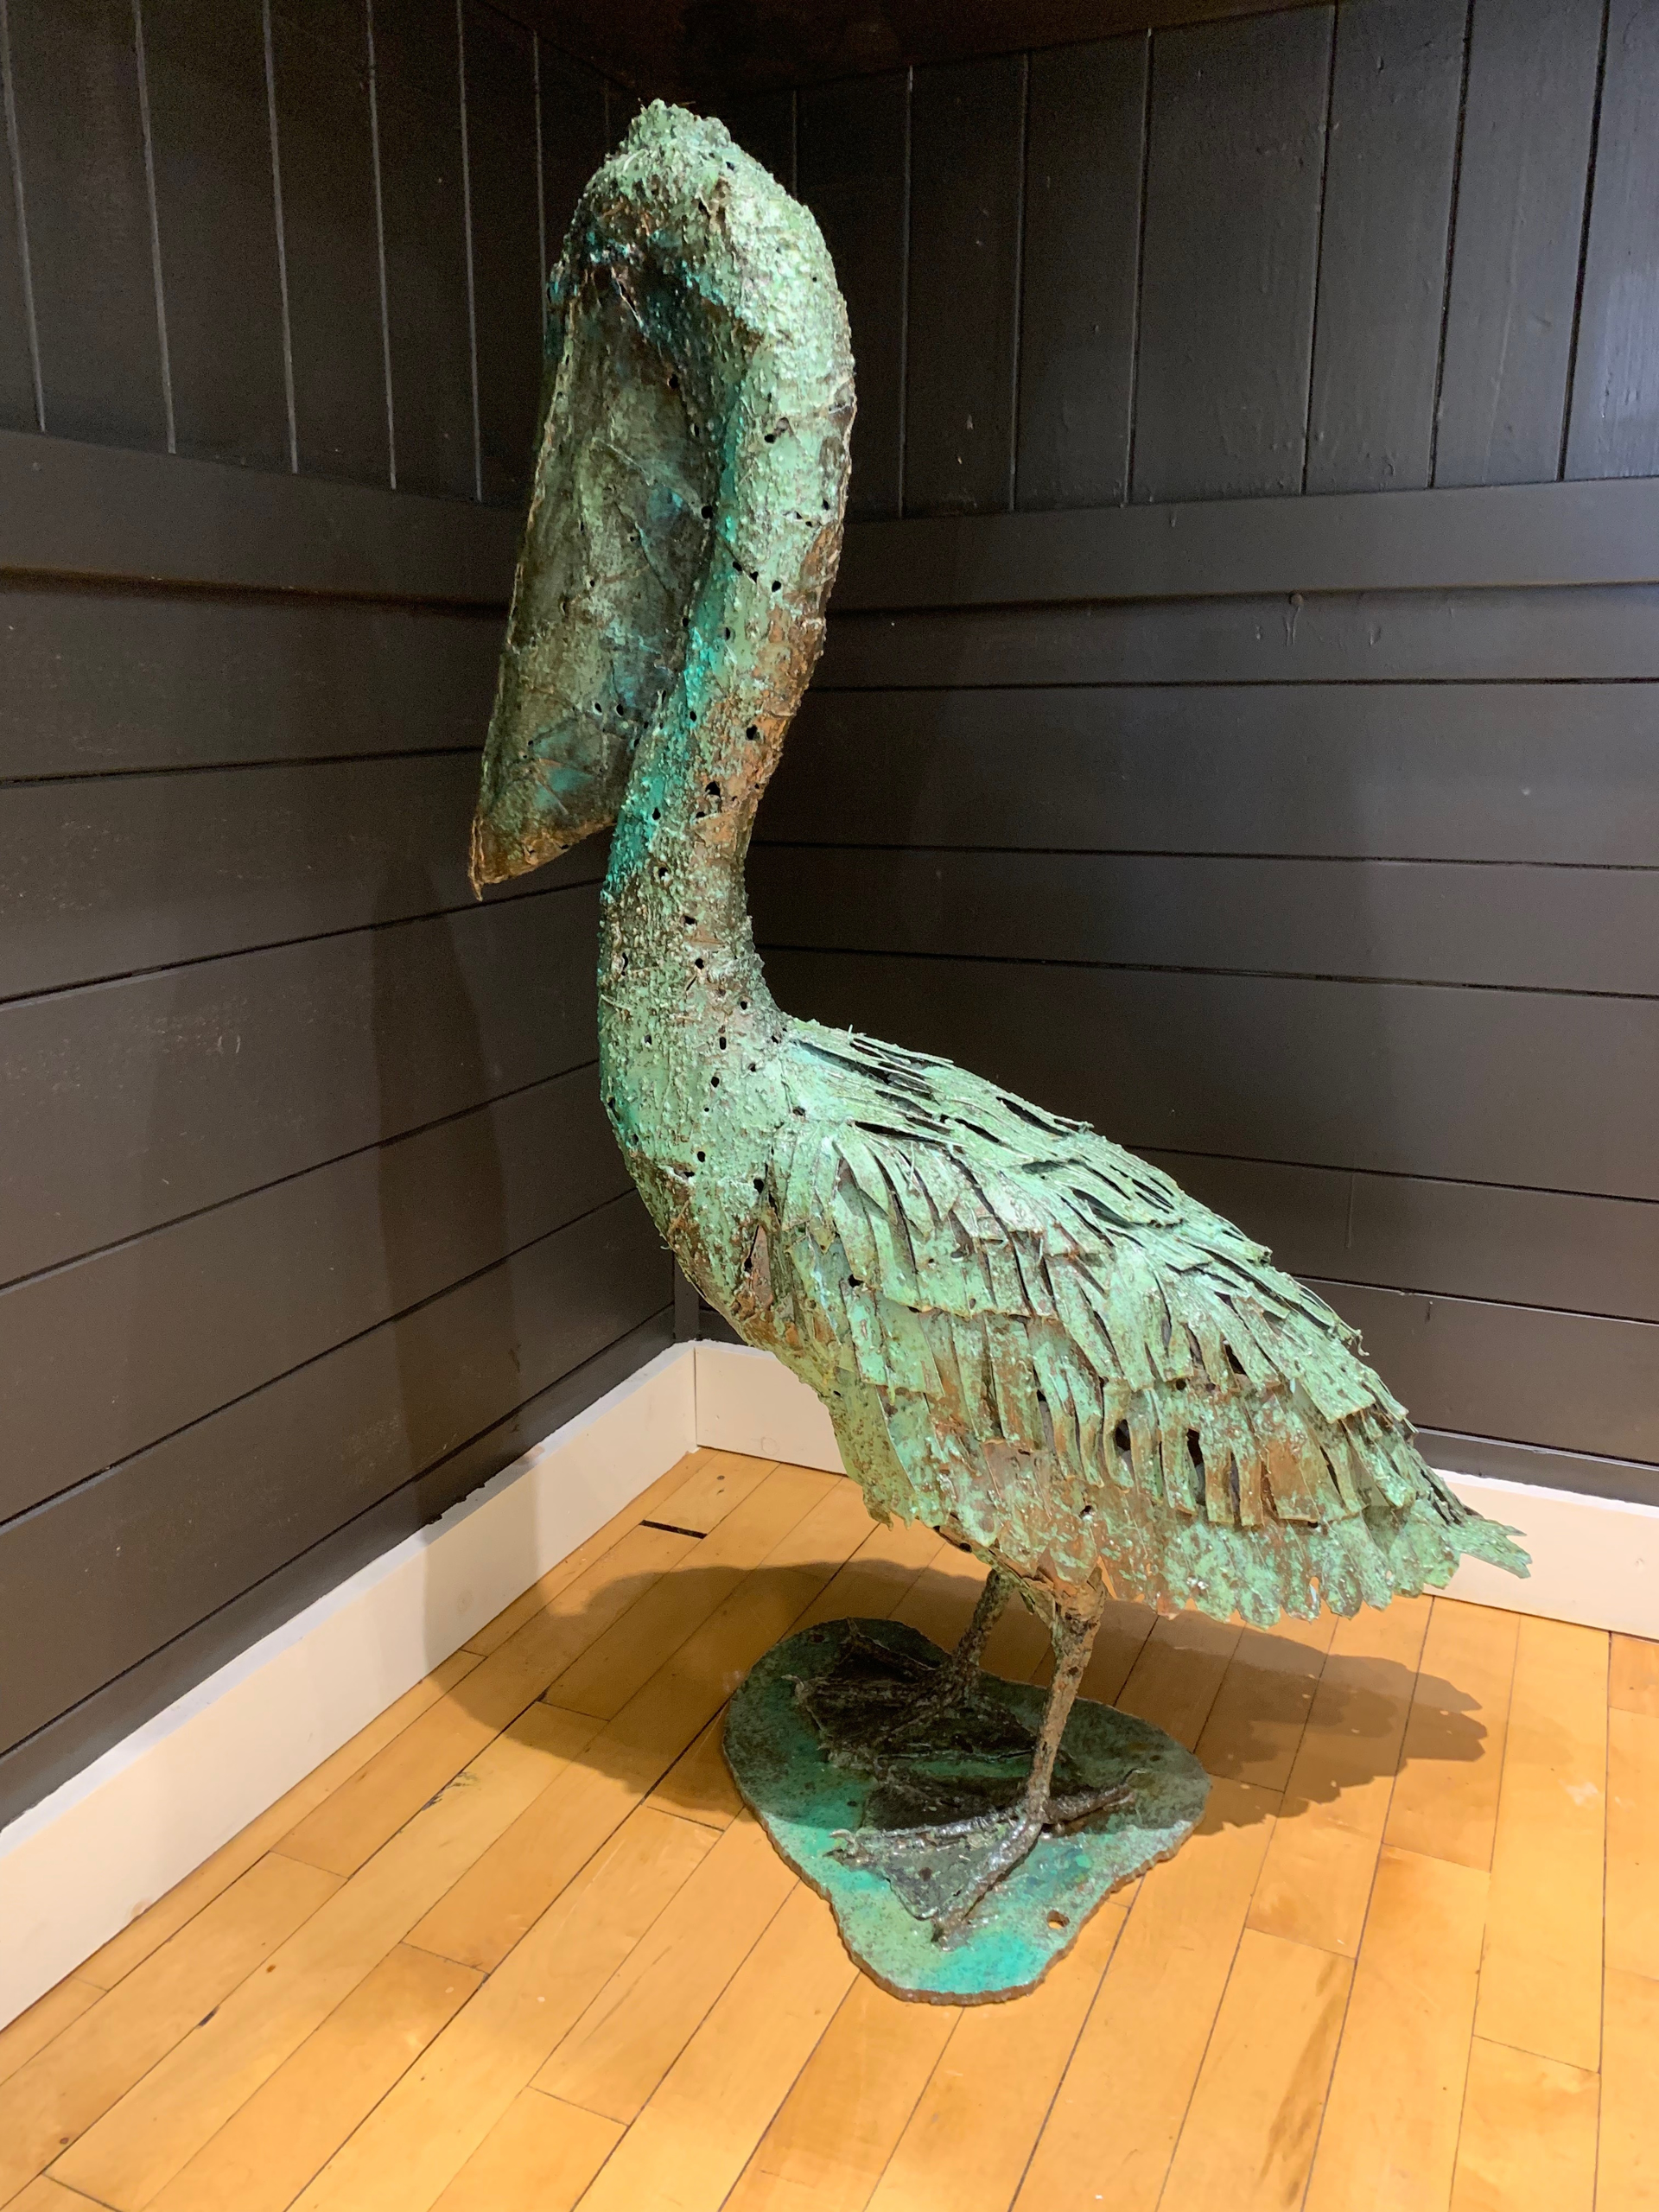 Pelican by William Allen